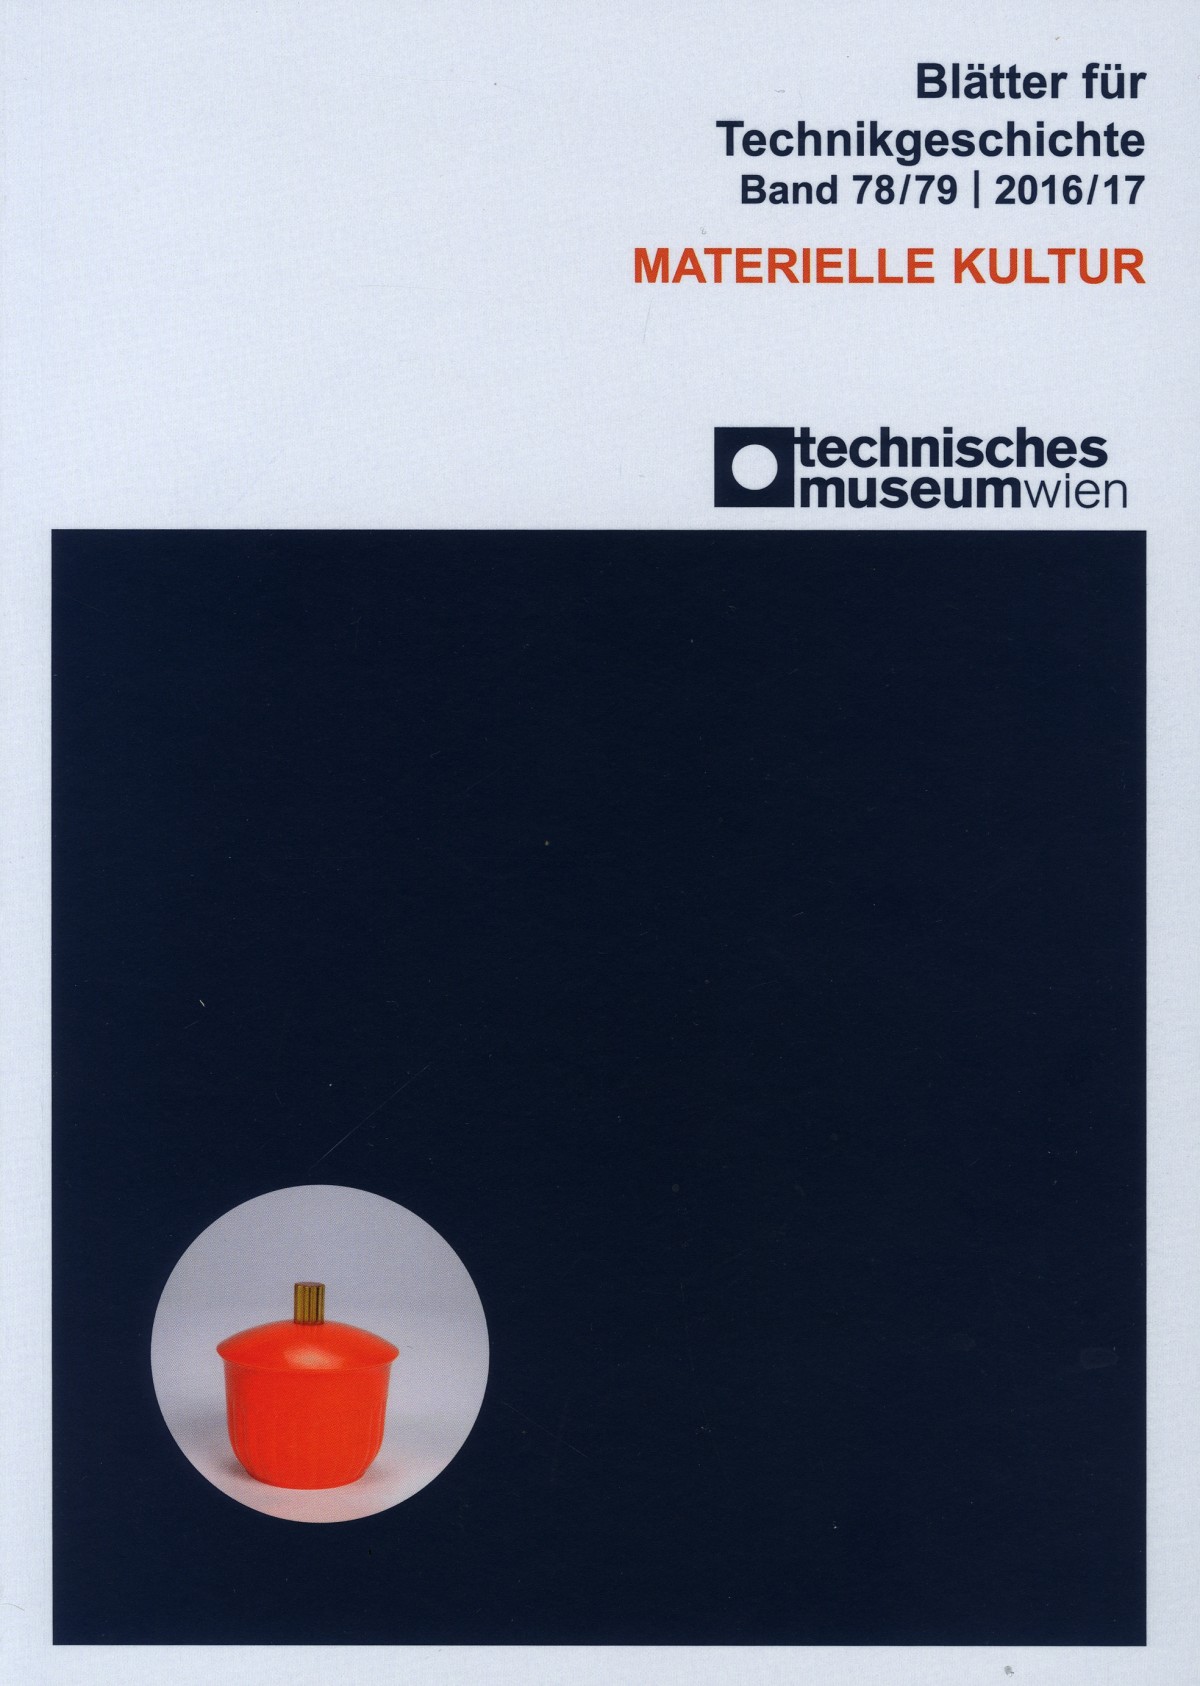 Cover der "Blätter für Technikgeschichte", Band 78/79 (Materielle Kultur)